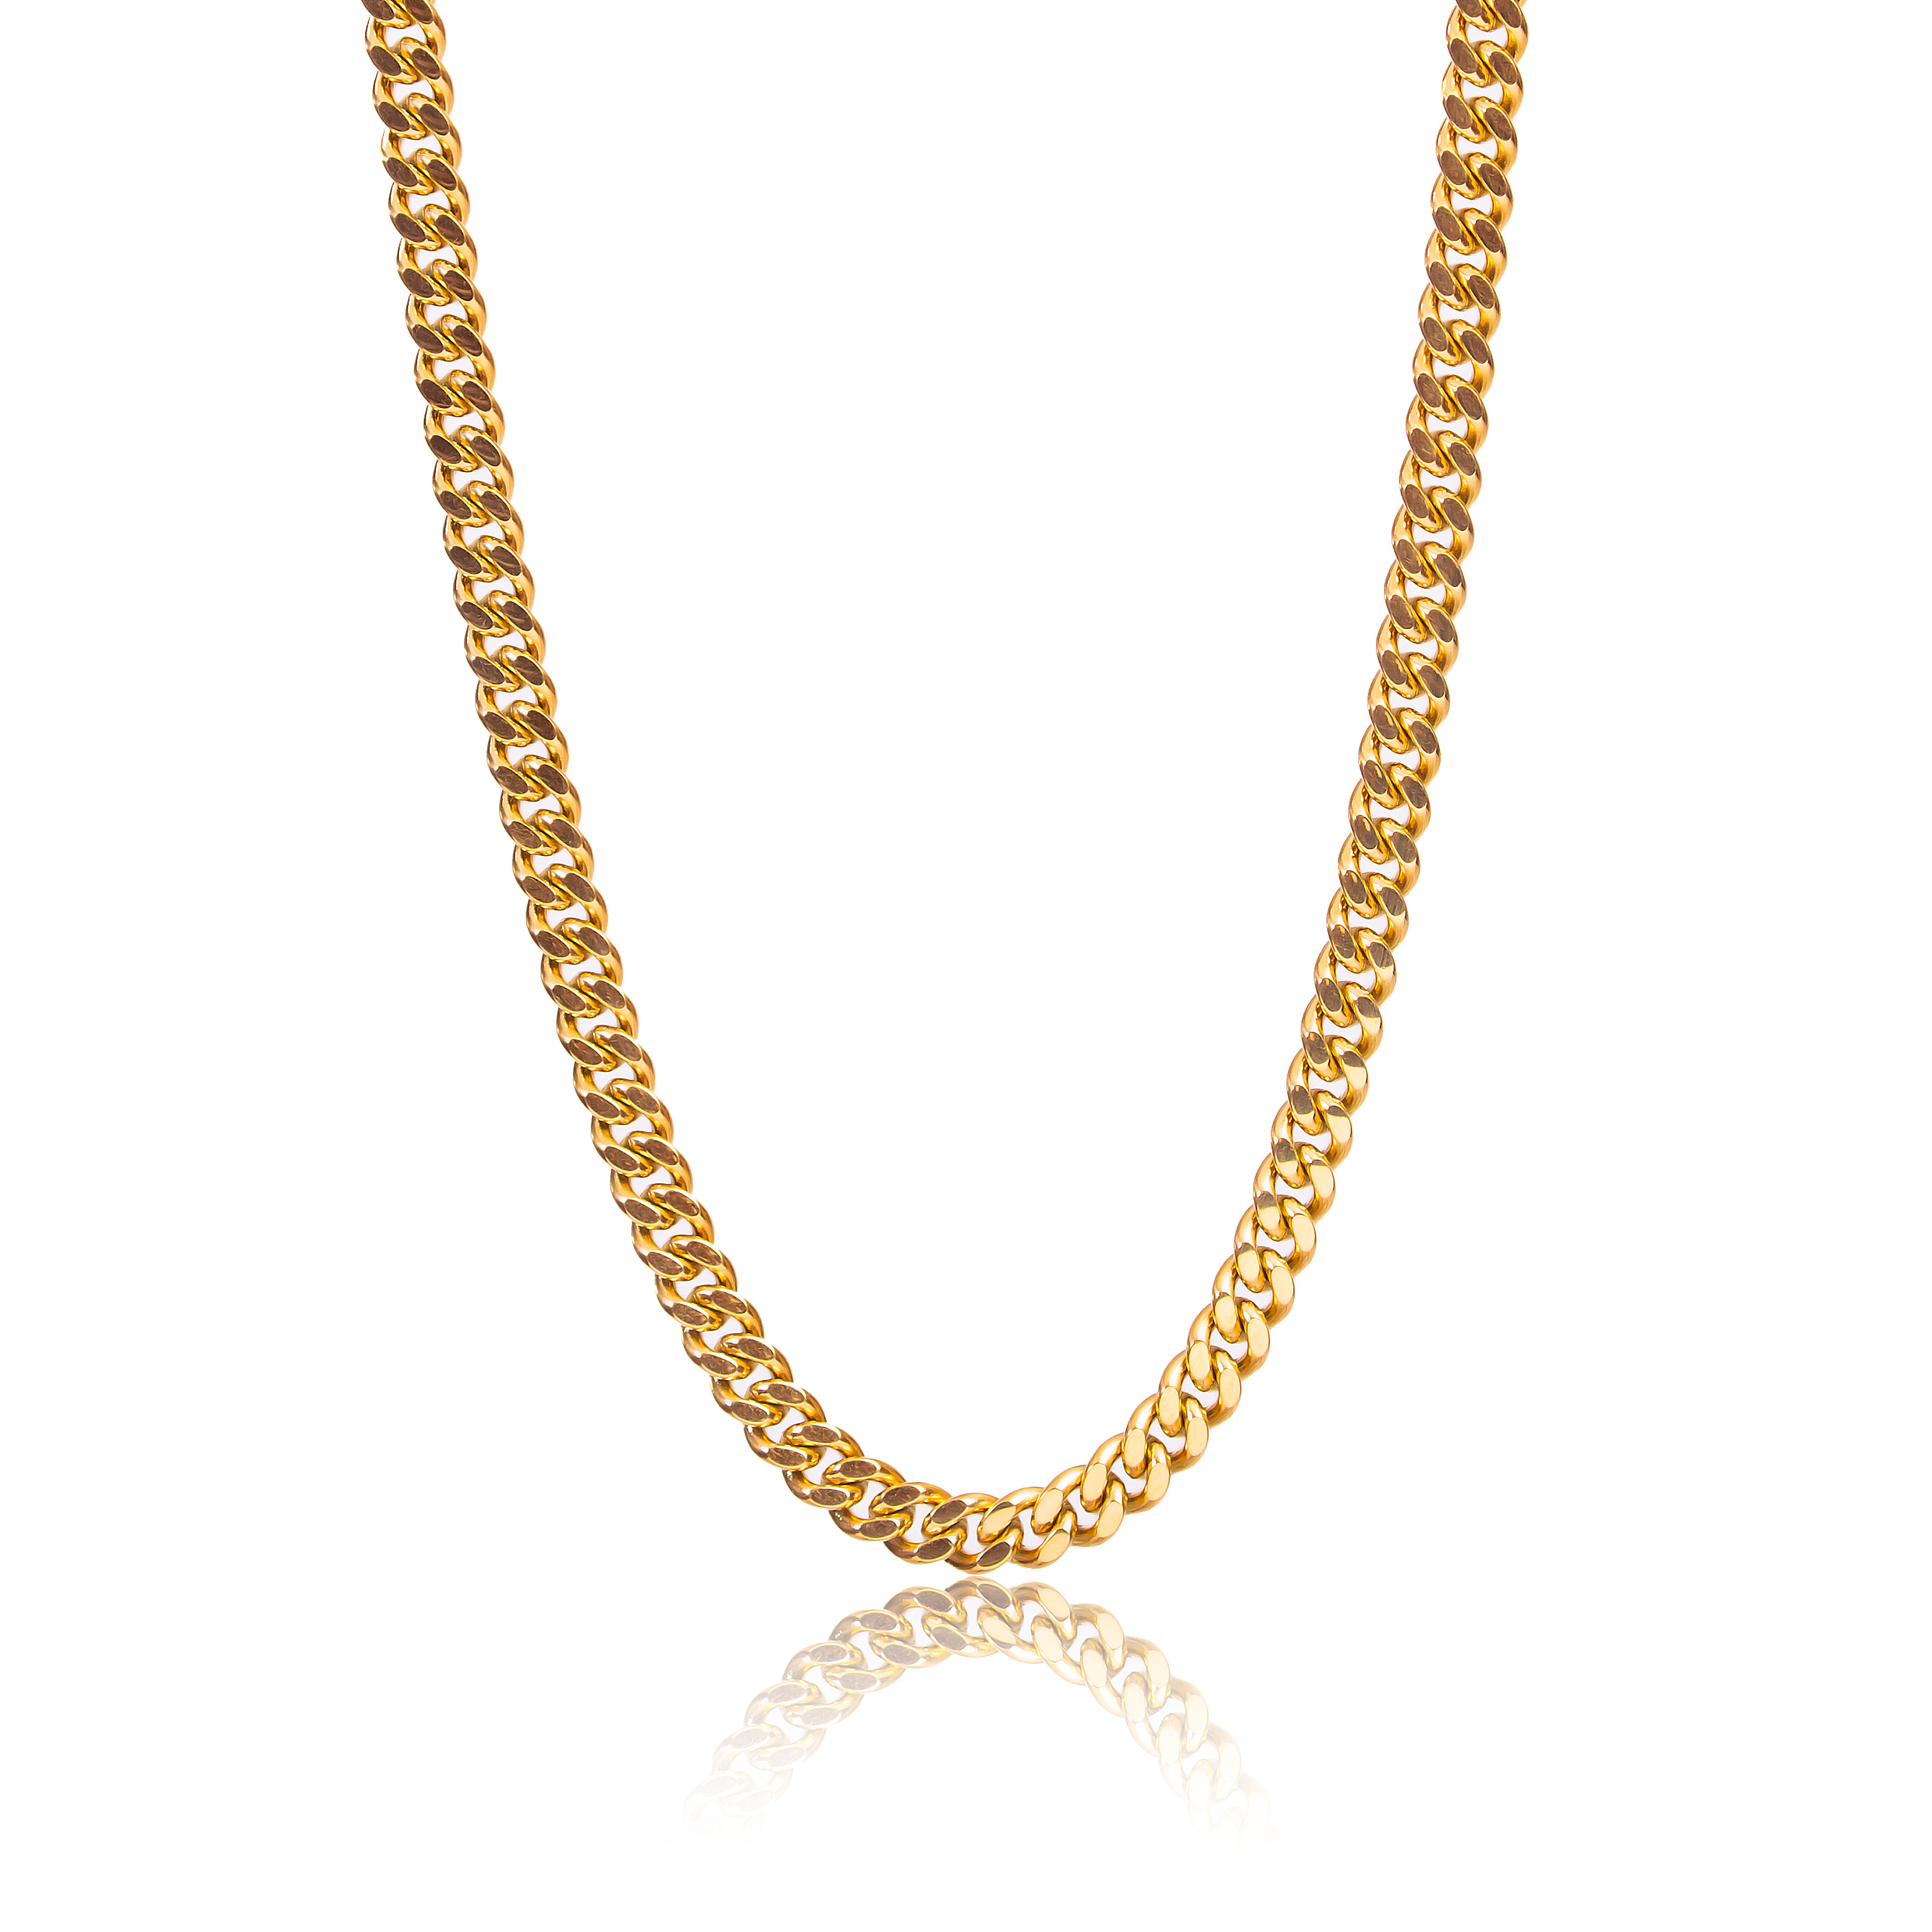 Tseatjewelry Women's Gold Feels Necklace